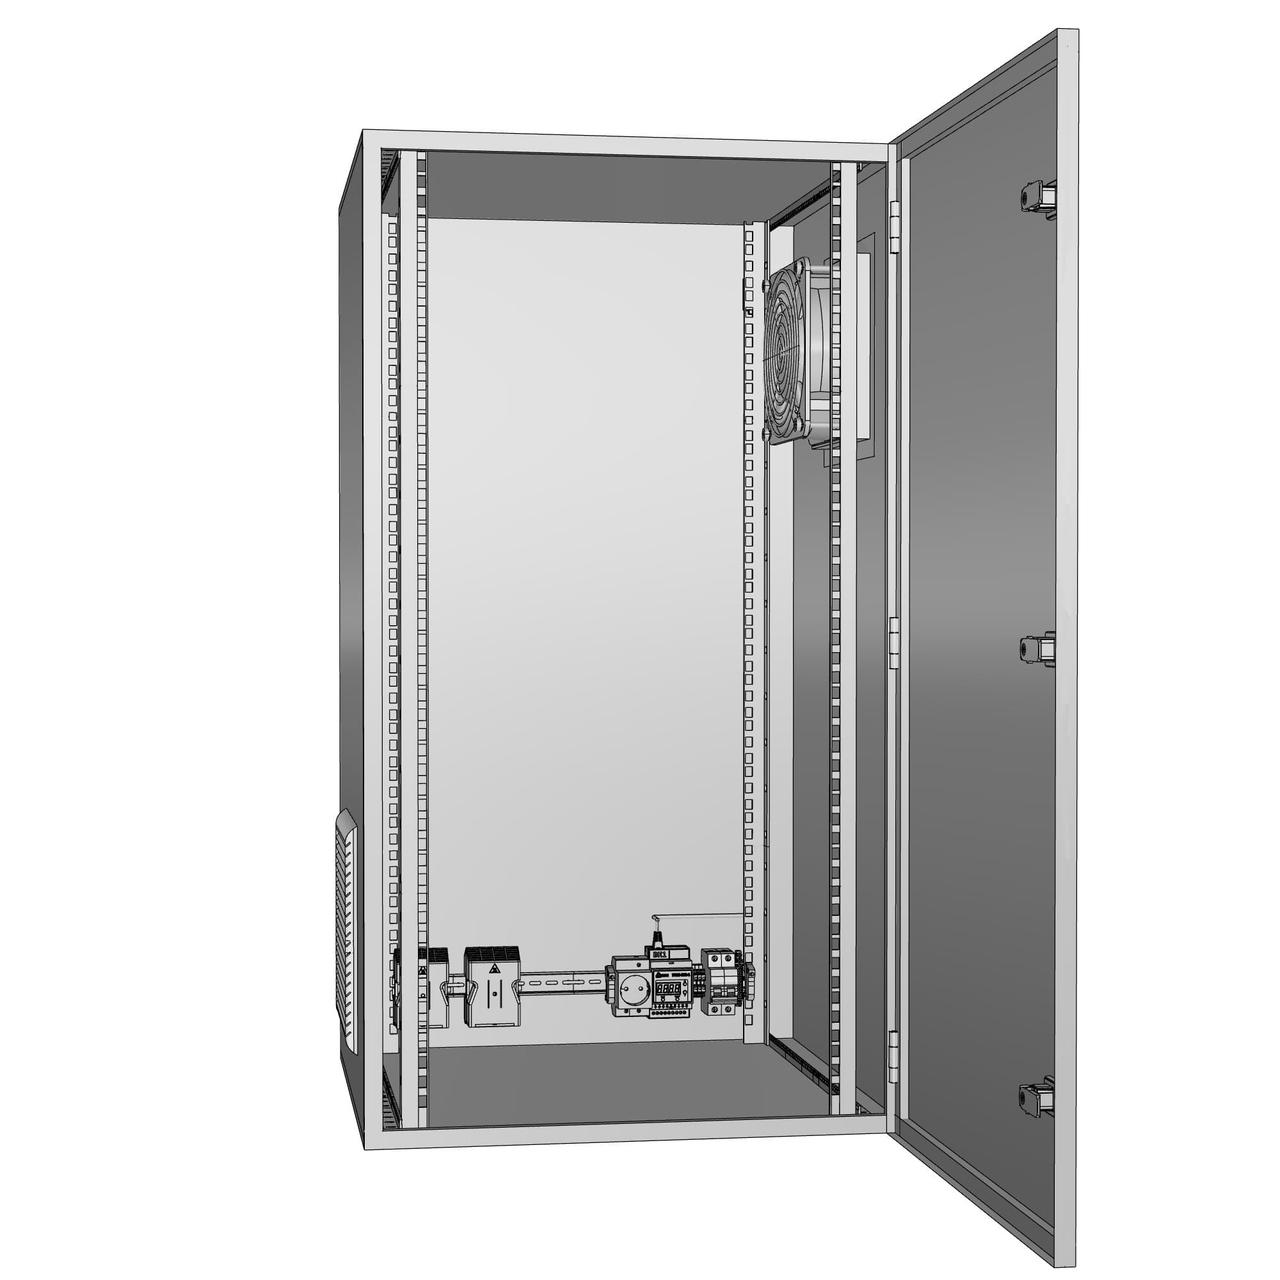 Шкаф климатический утеплённый с обогревом и вентиляцией ЩКу- ОВ- 3 - 600×400×250 (В×Ш×Г) IP65